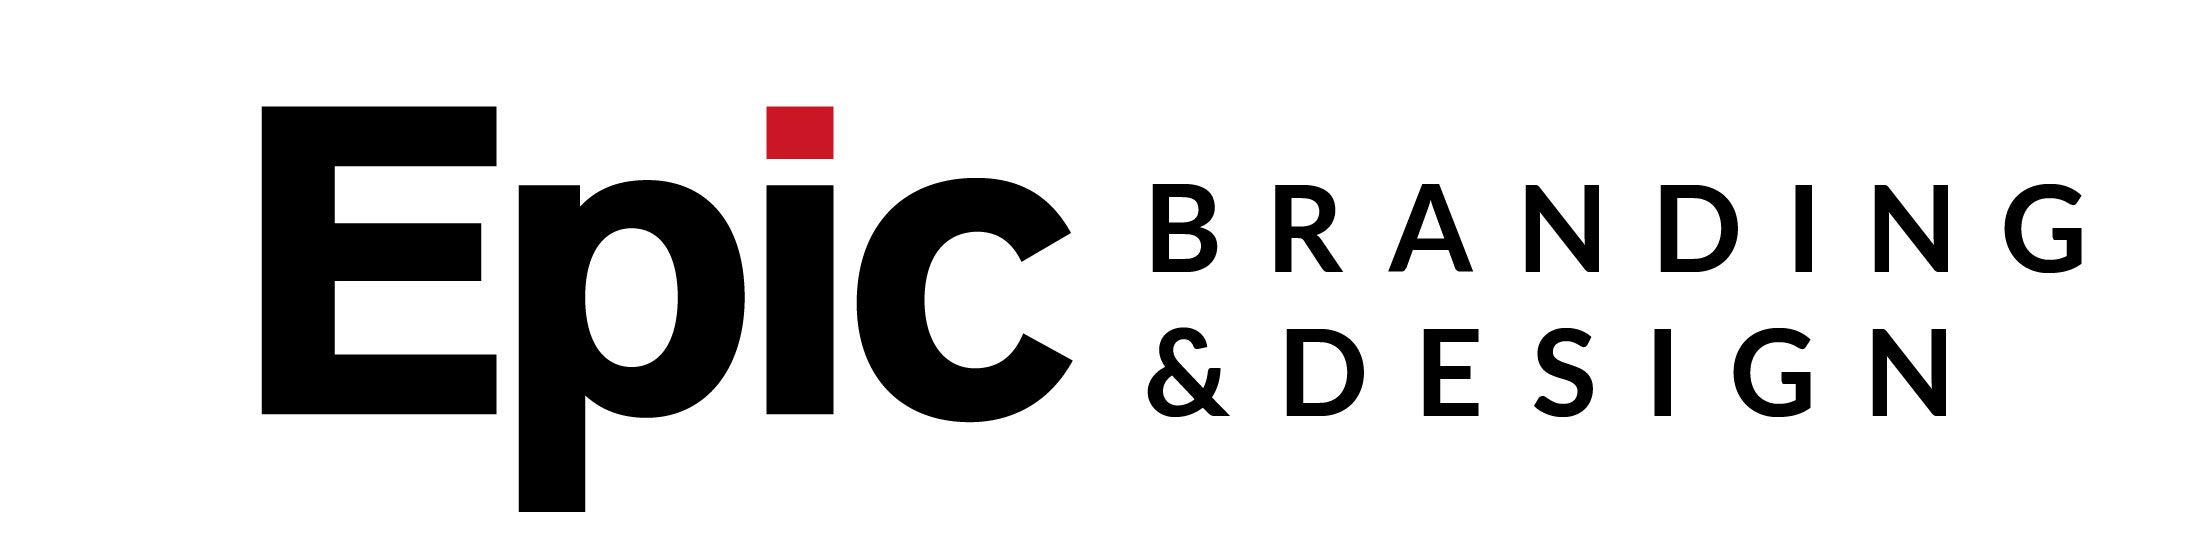 epic-branding-design-logo-hor